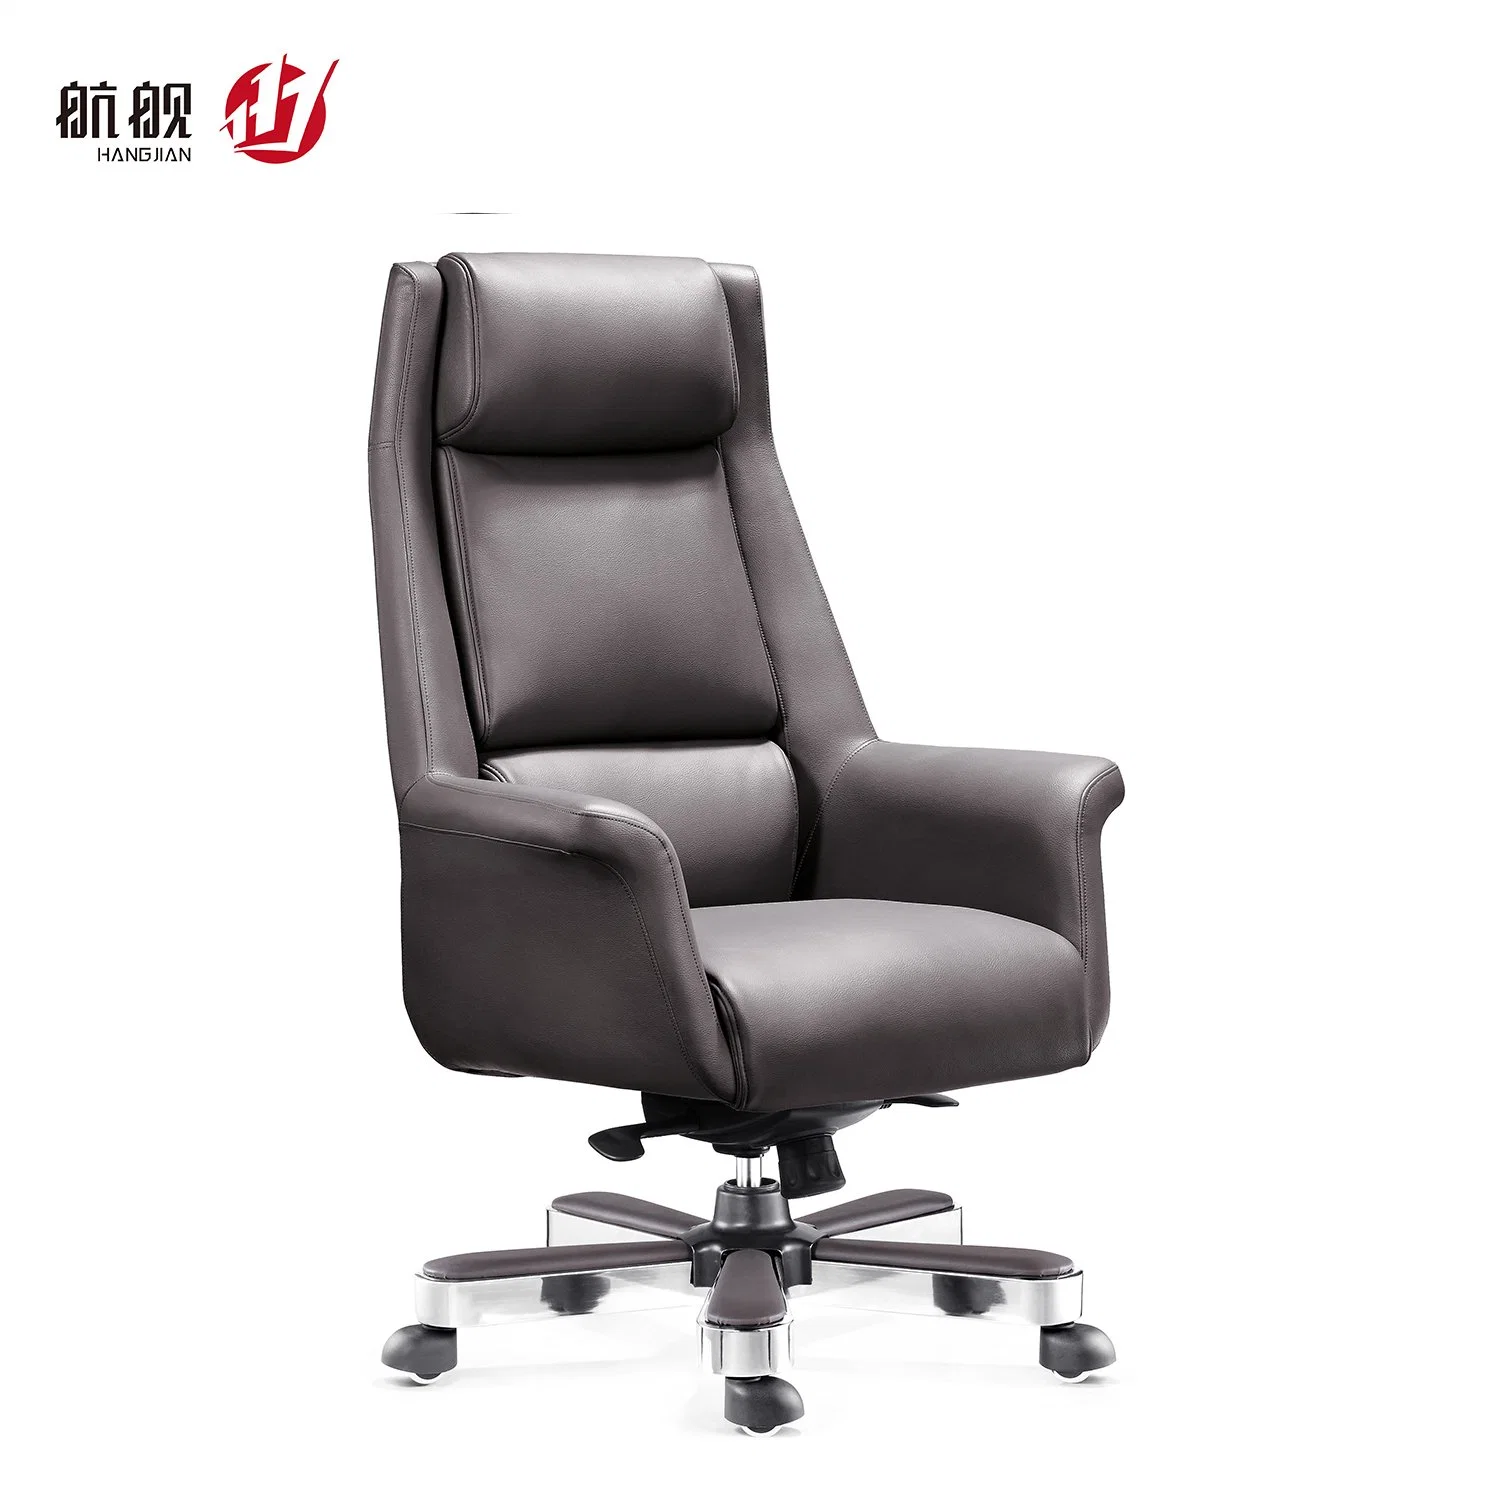 Mit nach oben nach unten Kopfstütze Office Boss Stuhl Computer Stuhl ergonomisch Lederstuhl Mit Hoher Rückenlehne